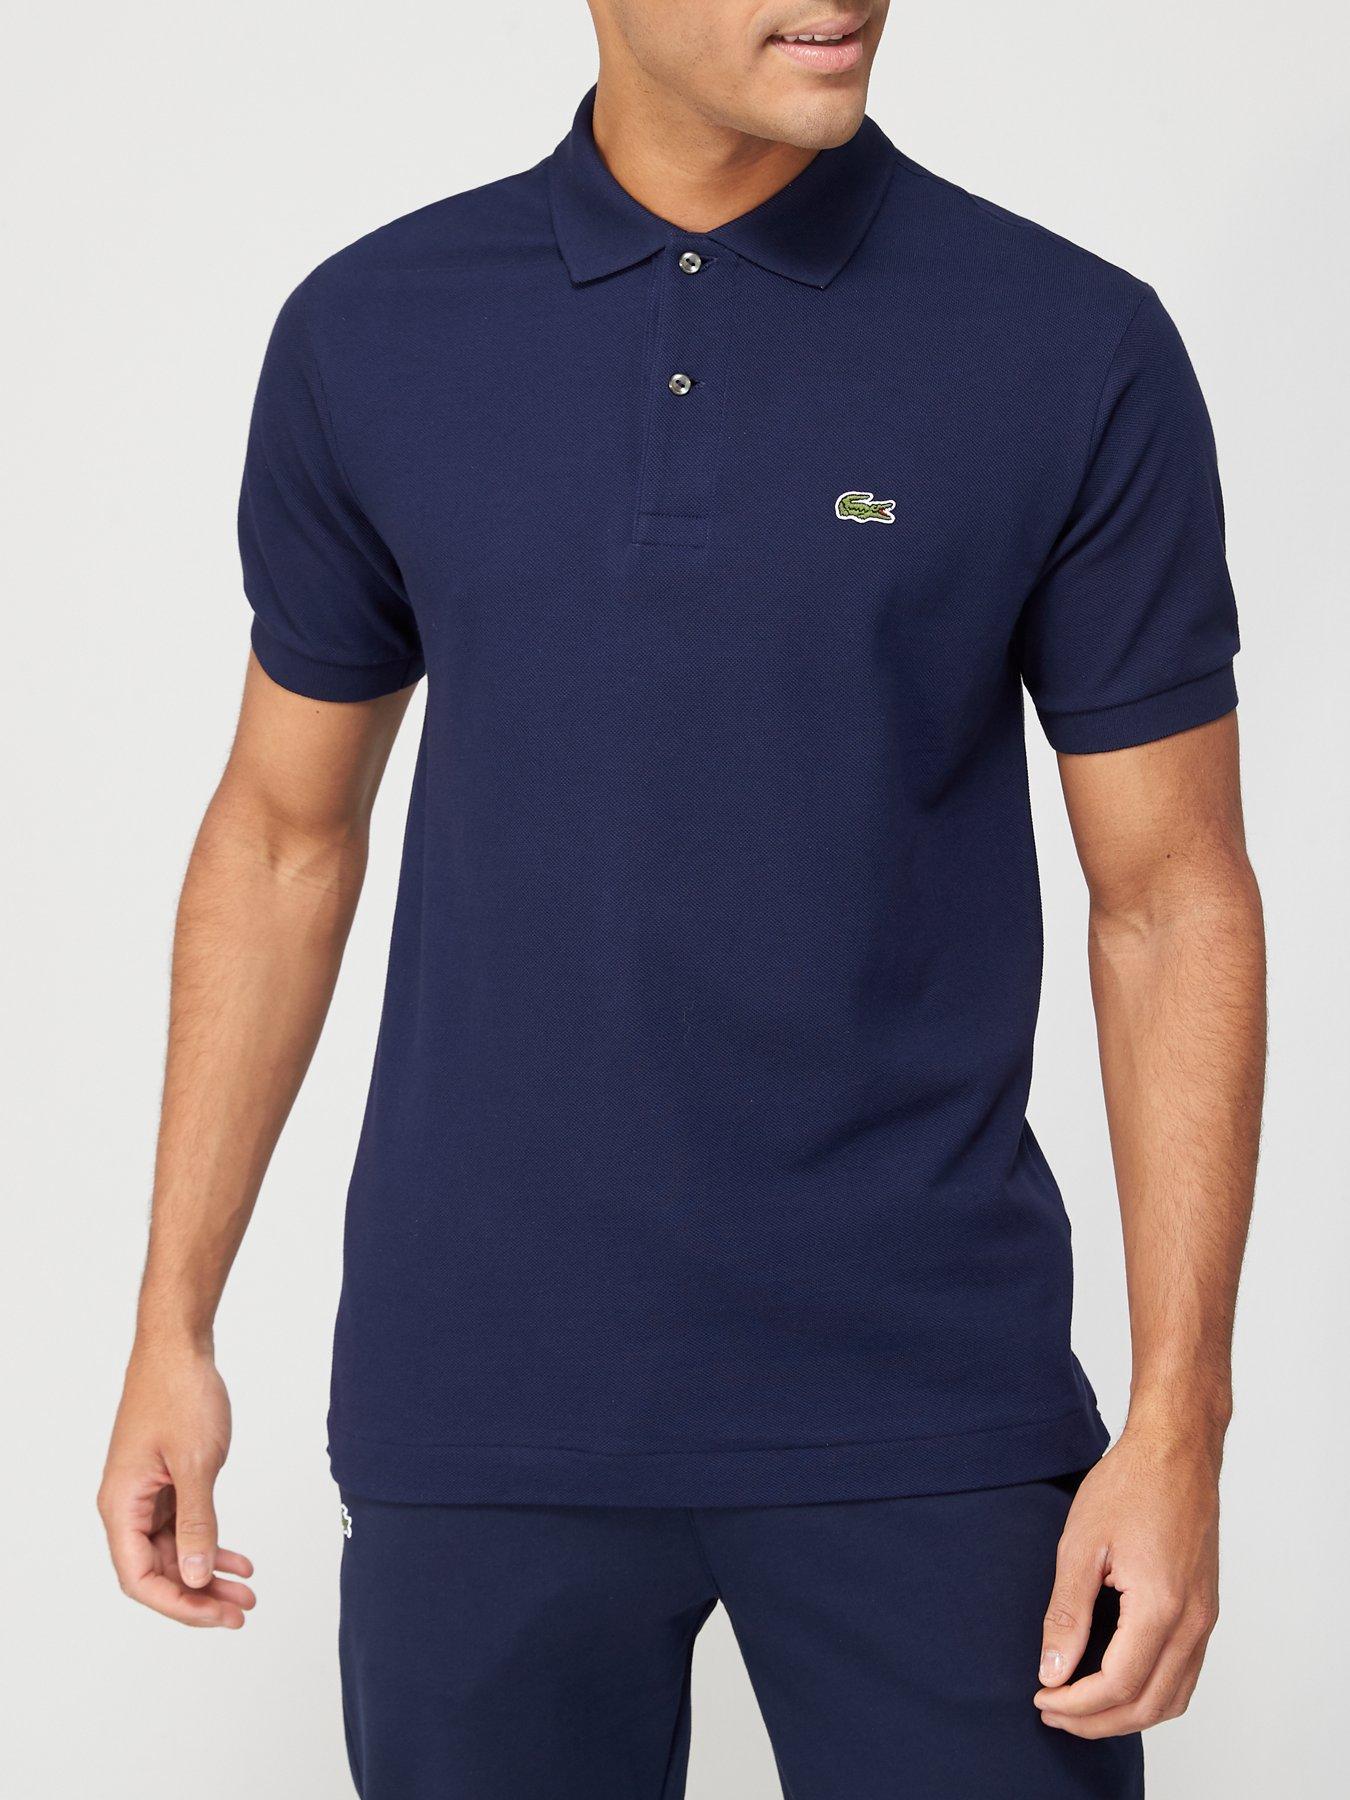 Lacoste Men's Navy Blue Regular Fit Soft Cotton Polo